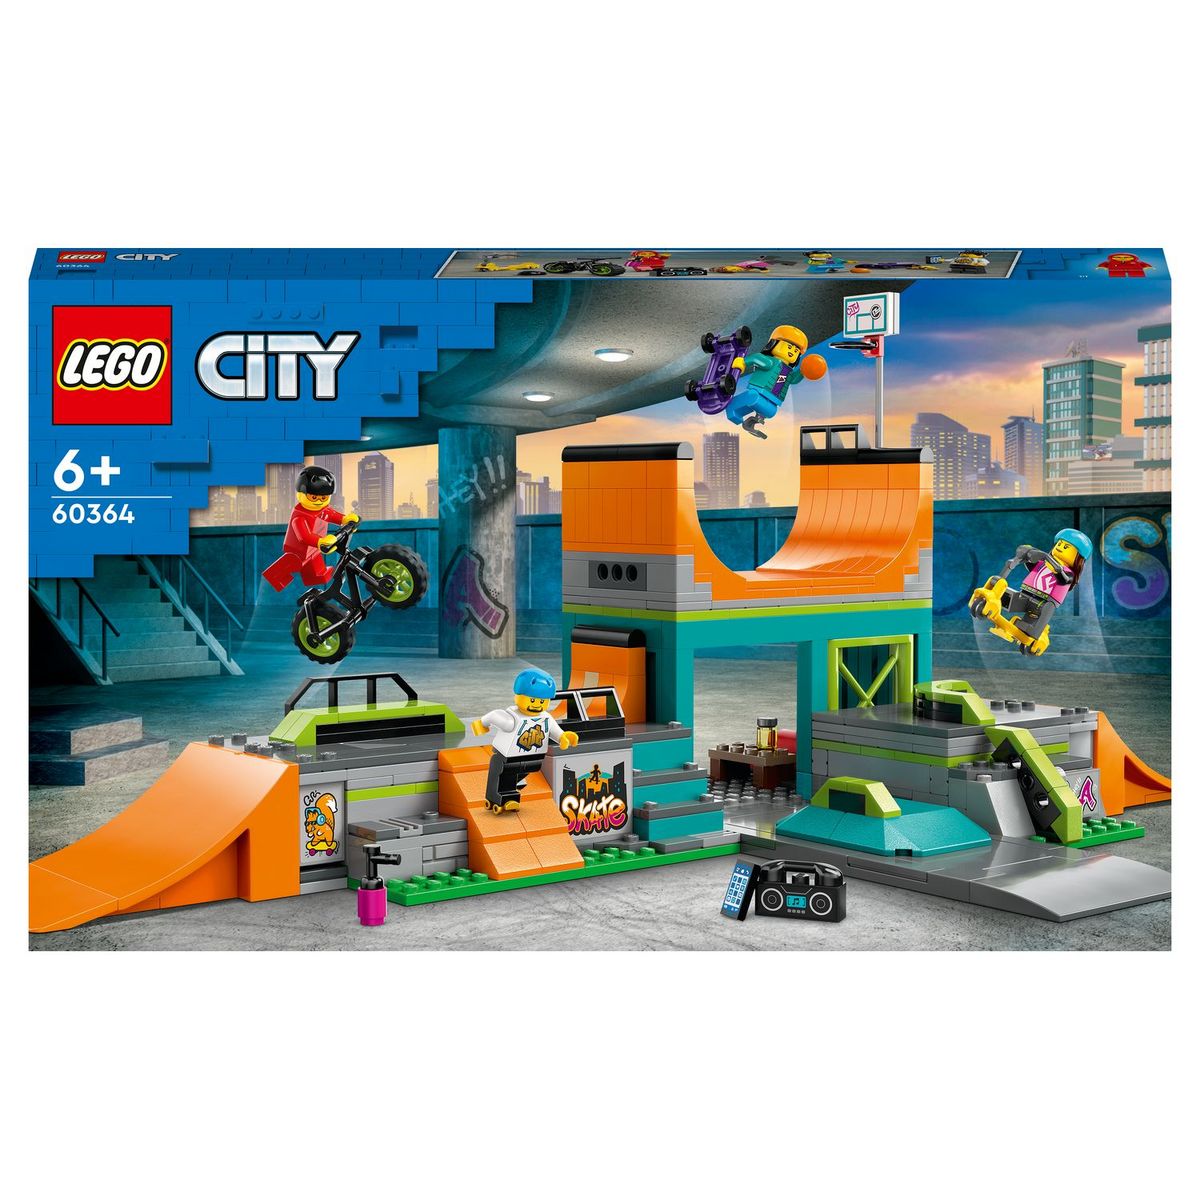 LEGO City 60364 - Le Skatepark Urbain, avec Vélo BMX, Skateboard, Trottinette, Rollers et 4 Minifigurines pour Réaliser des Stunts